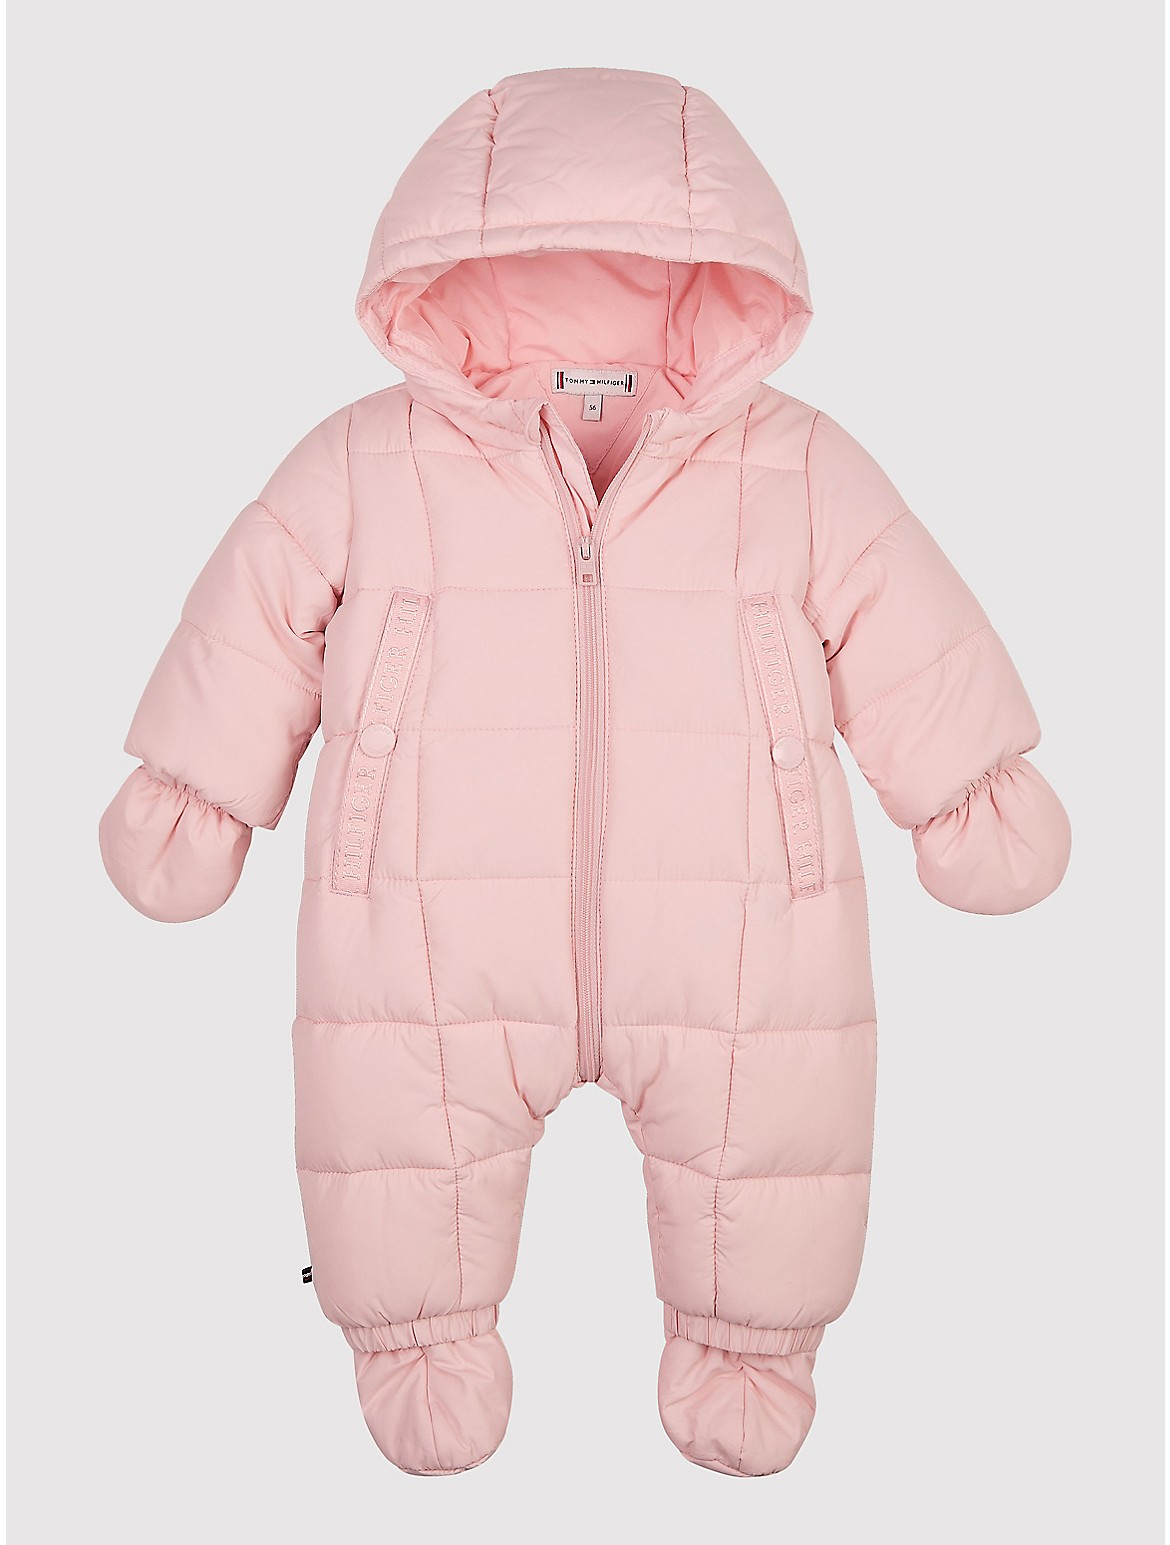 Tommy Hilfiger Babies' Ski Suit Set - Pink - 12M